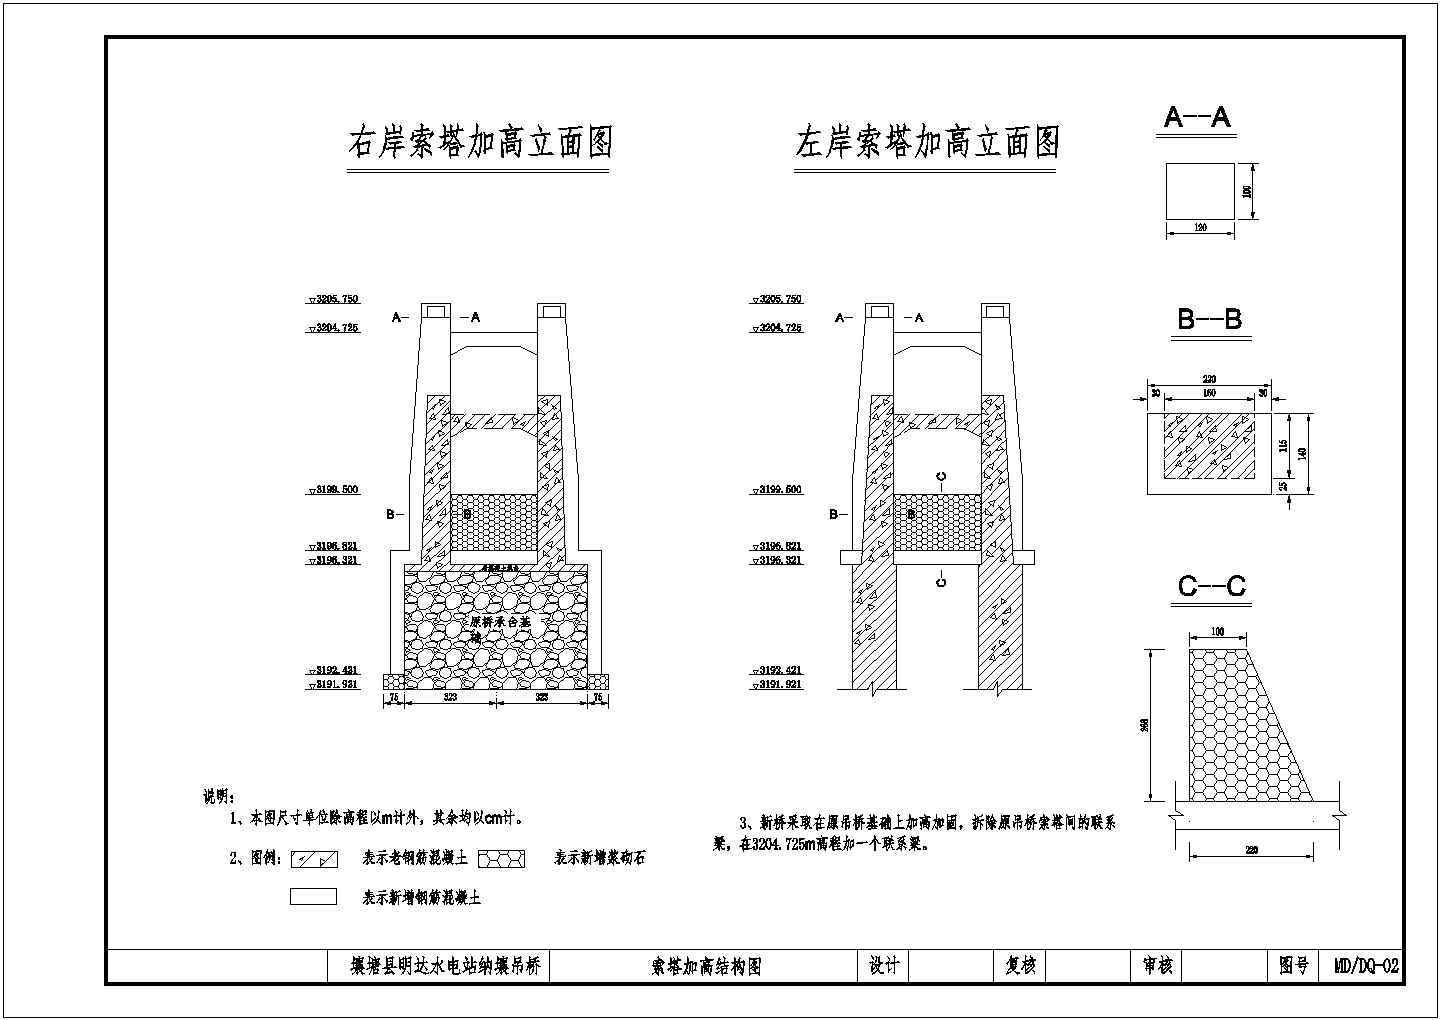 壤塘县明达水电站纳壤吊桥改造结构钢筋图